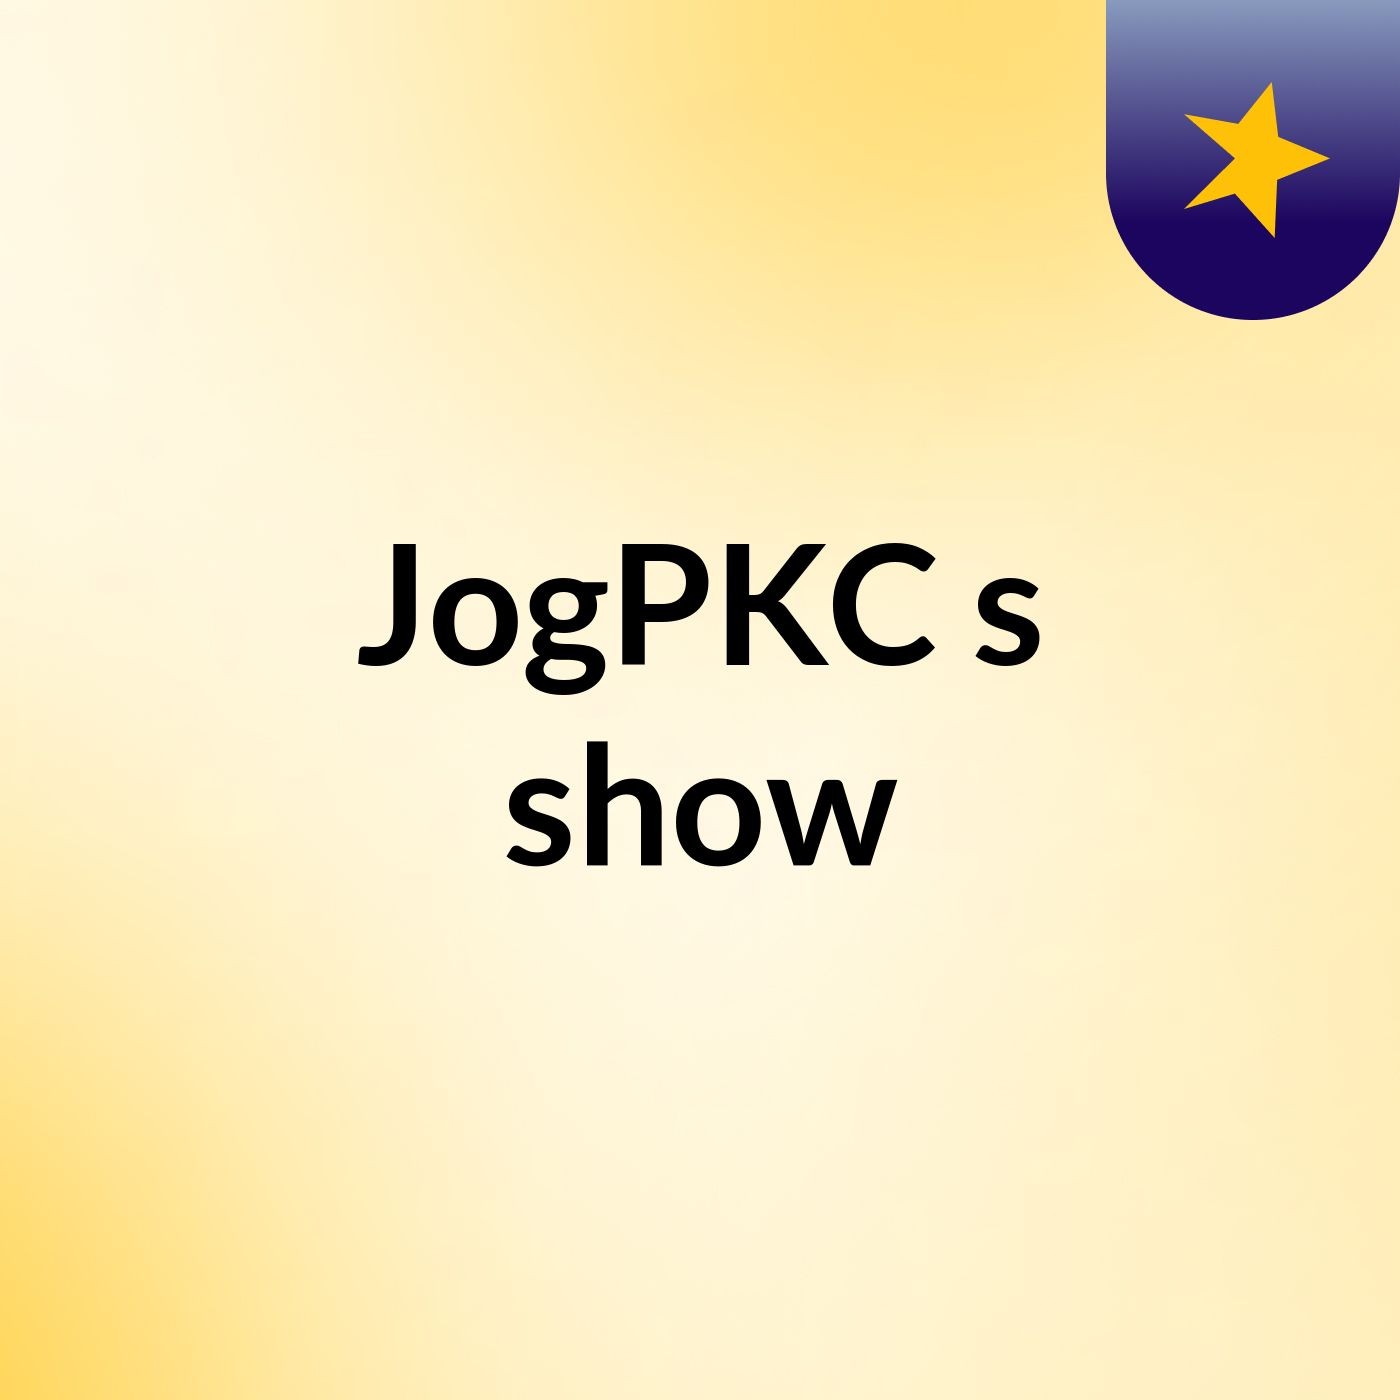 JogPKC's show